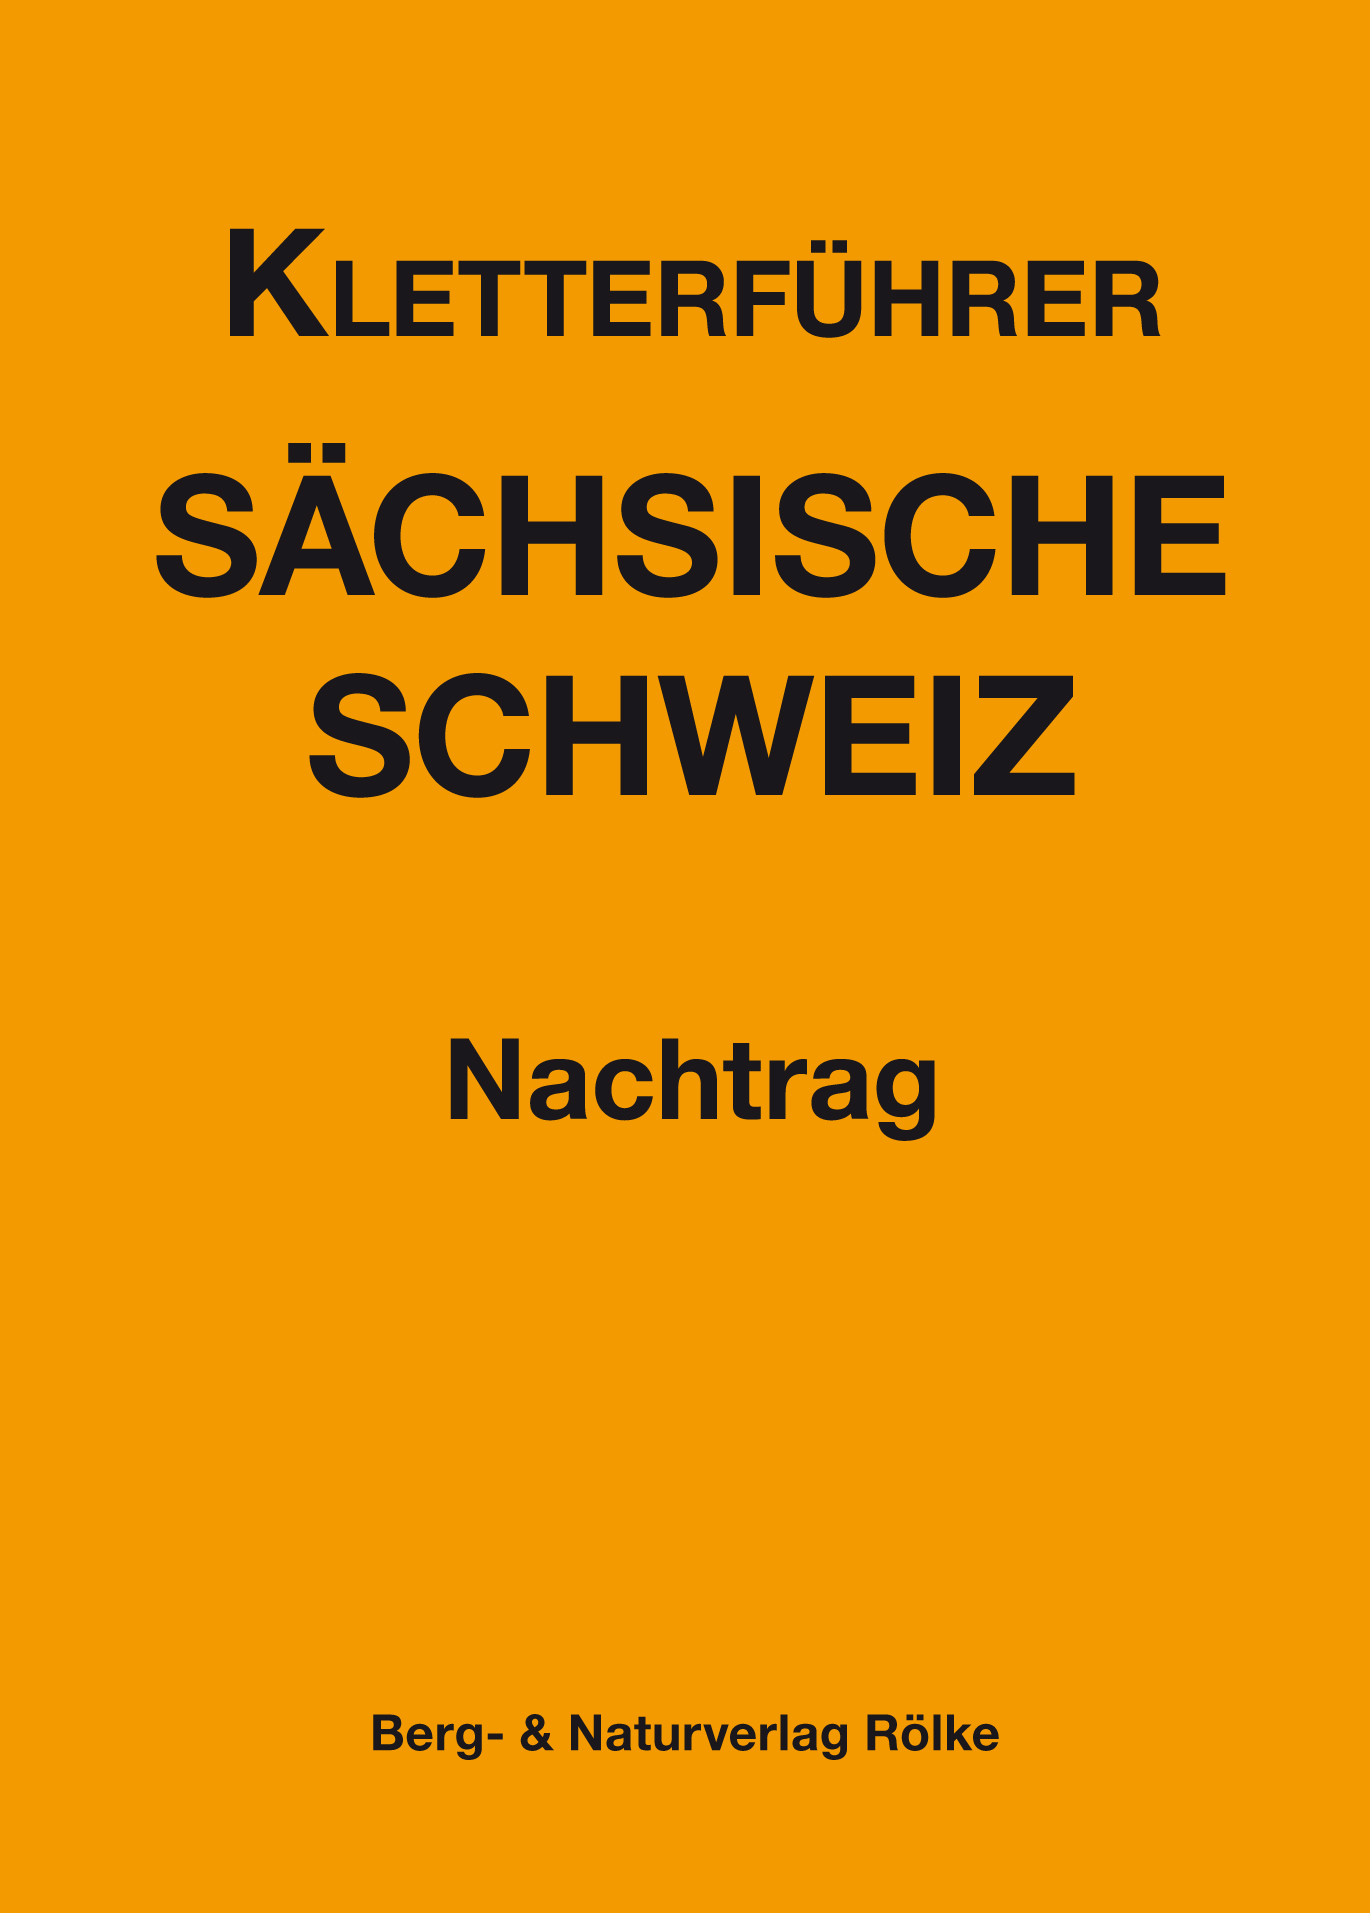 Kletterführer Sächsische Schweiz Nachtrag